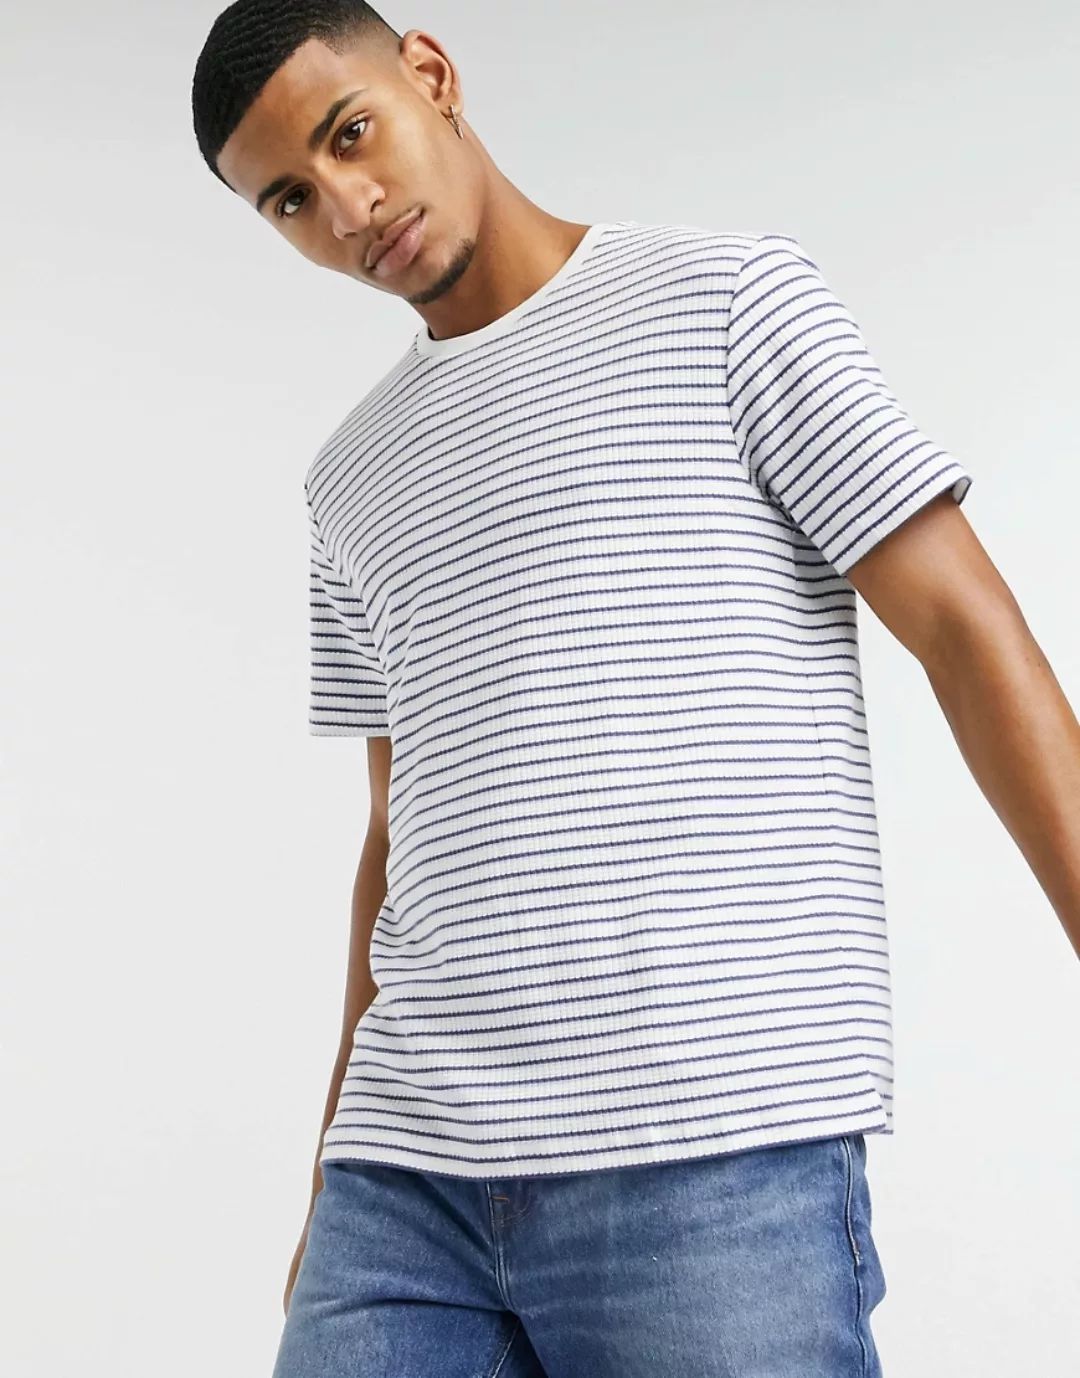 Topman – Gestreiftes T-Shirt in Blau und Weiß günstig online kaufen